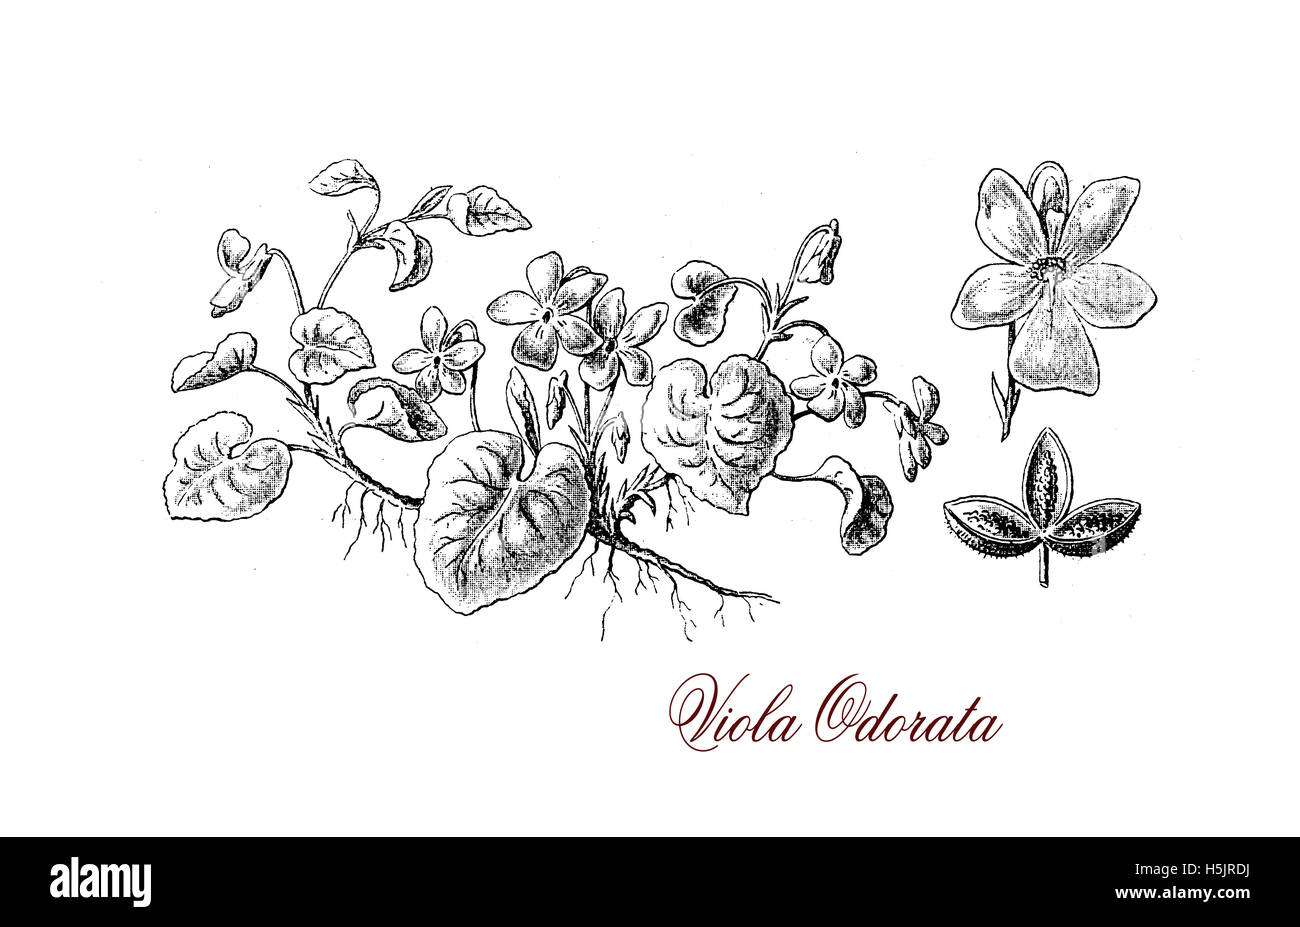 Viola odorata violette ou le jardin est une plante vivace plante à fleurs, les fleurs ont une odeur douce populaire à l'époque victorienne et les feuilles sont encore utilisées en parfumerie Banque D'Images